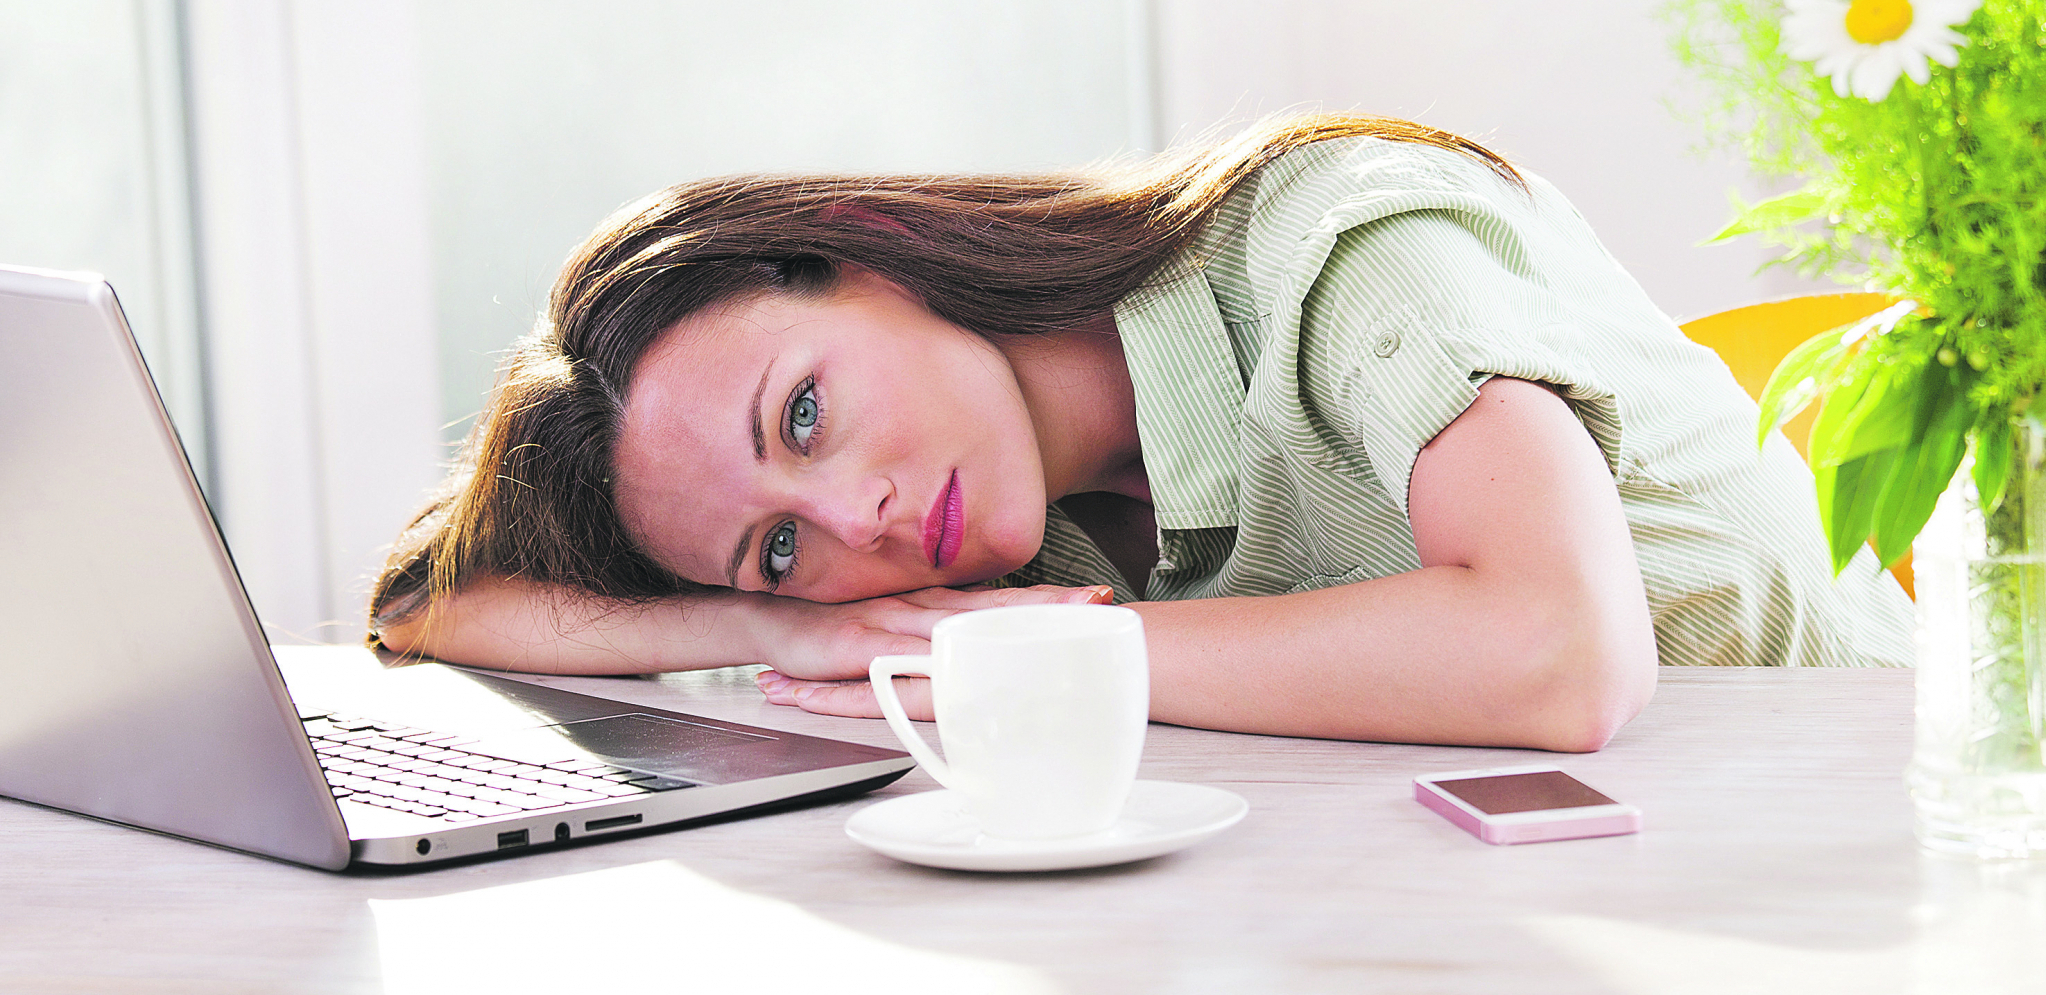 ZAŠTO STE HRONIČNO UMORNI? Prost metod da utvrdite zašto ste iscrpljeni, iako dovoljno spavate